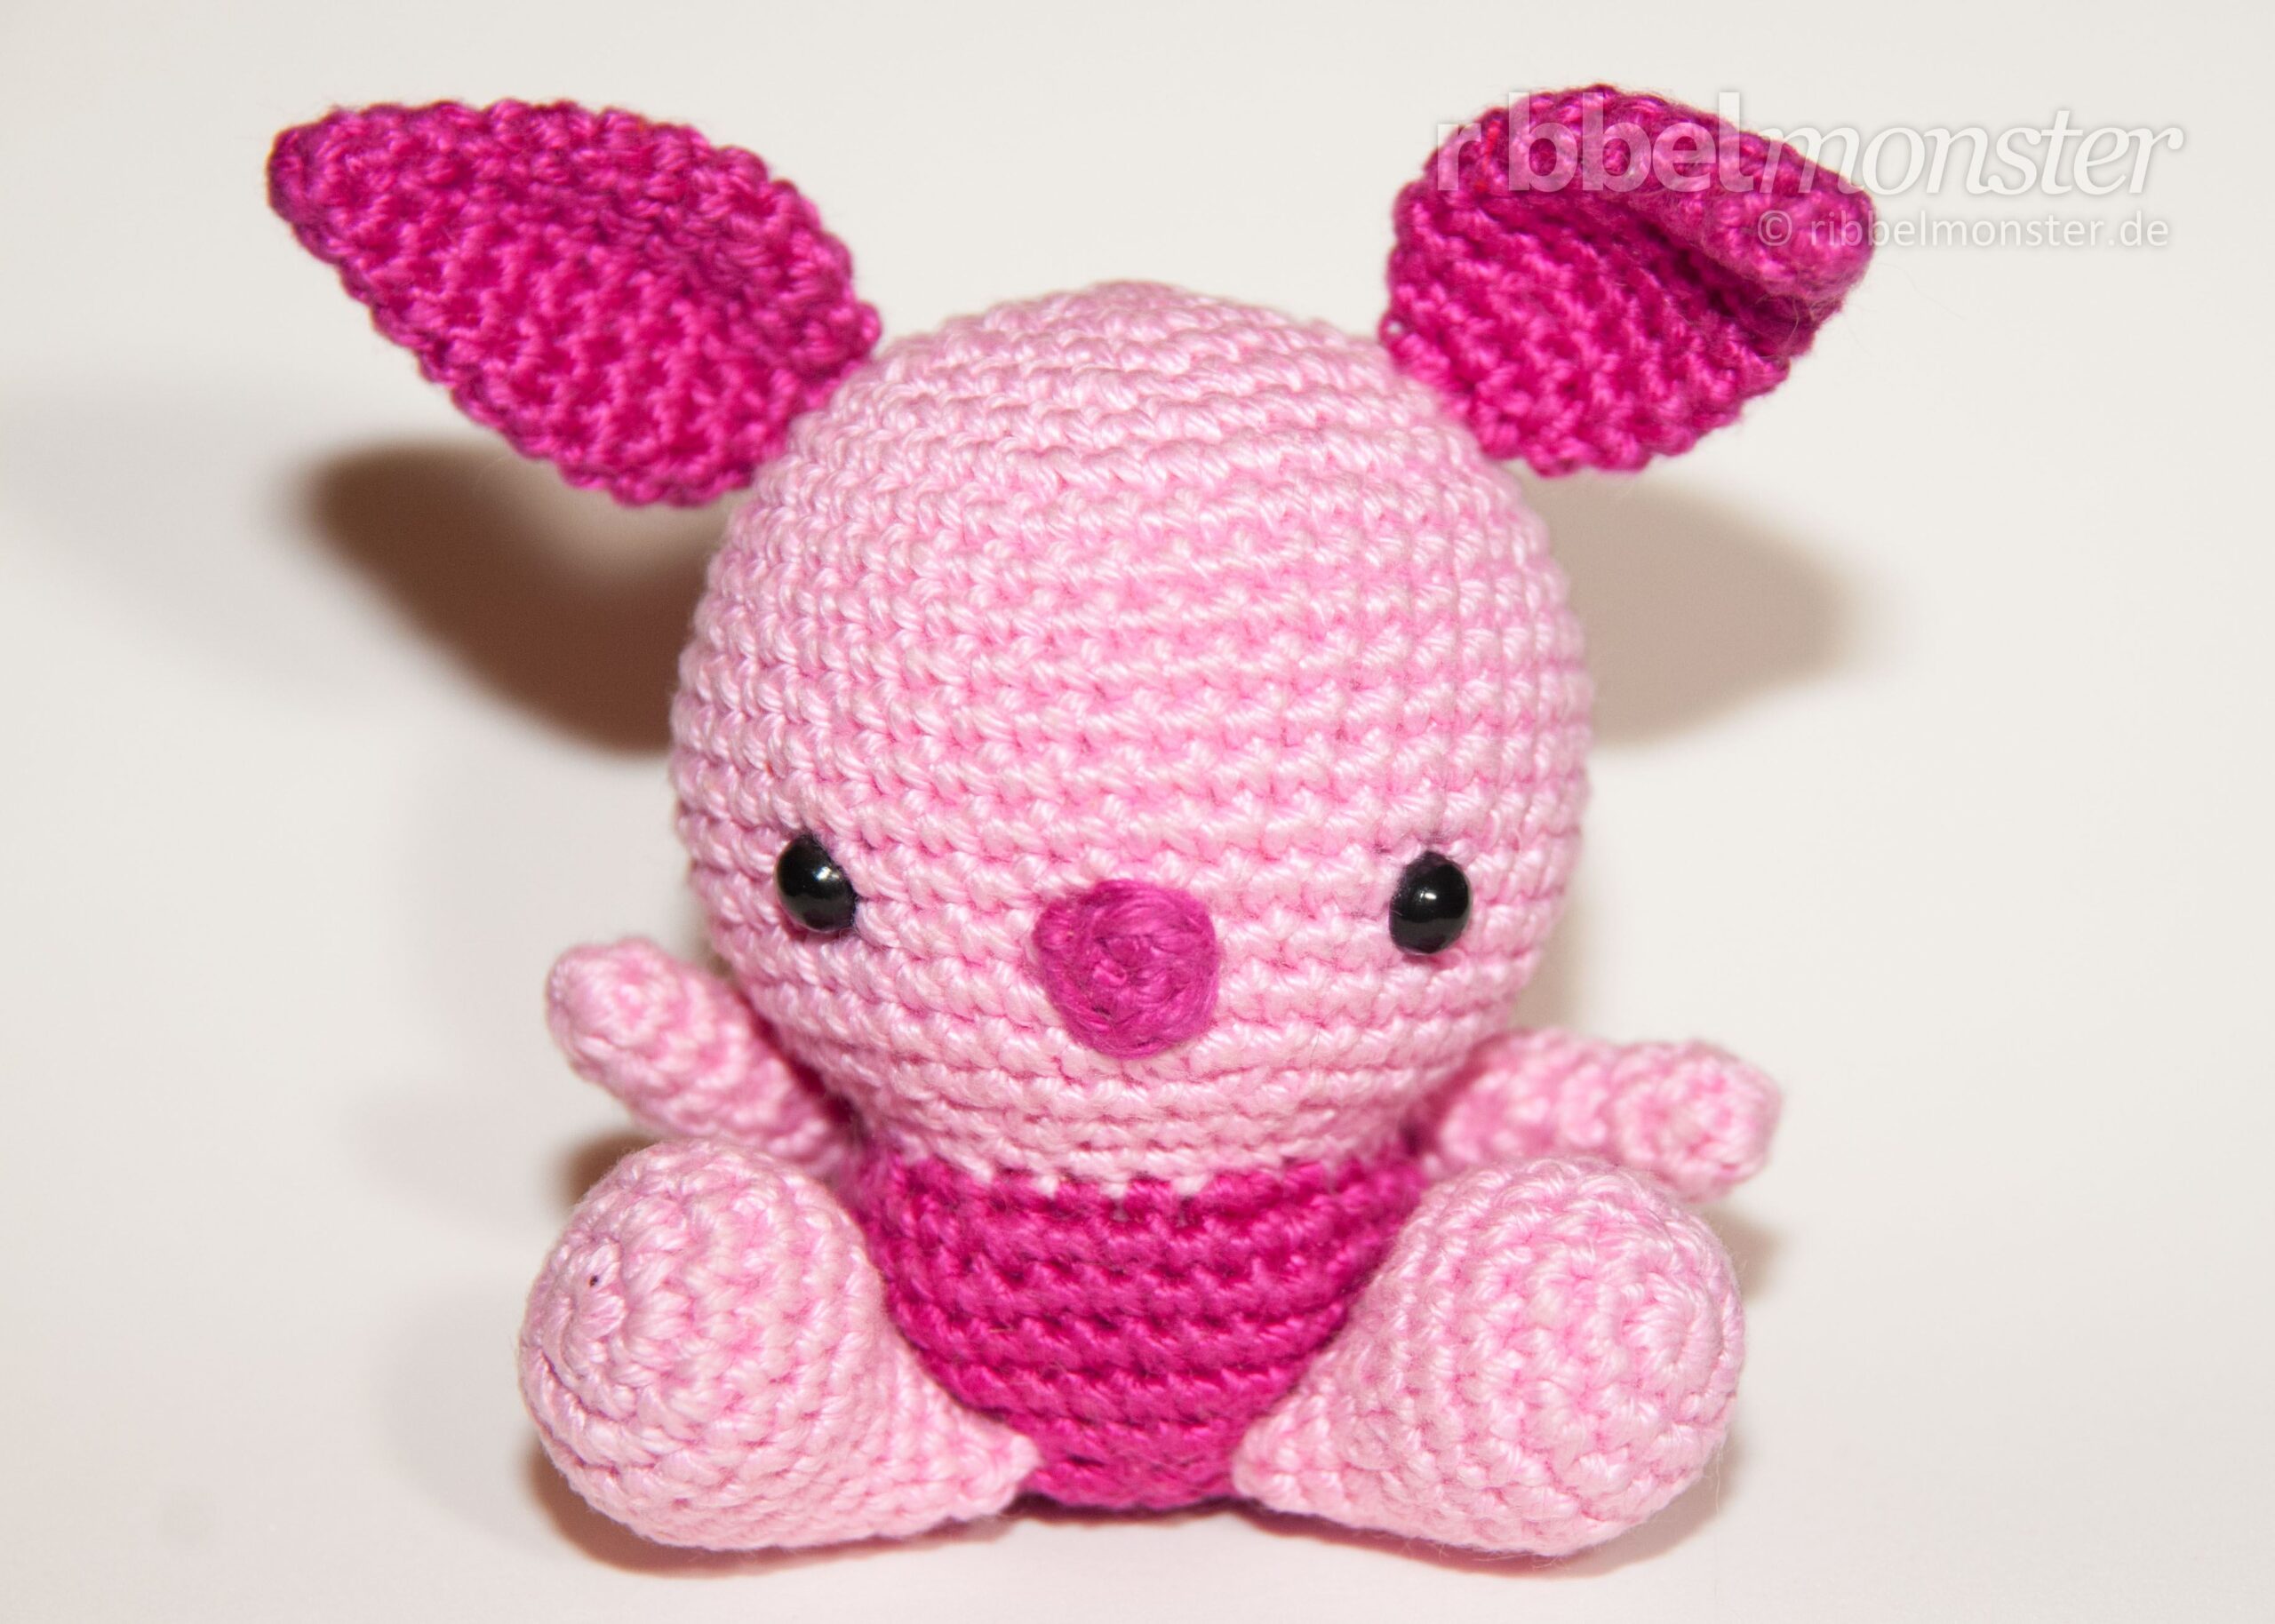 Amigurumi – Crochet Baby Piglet